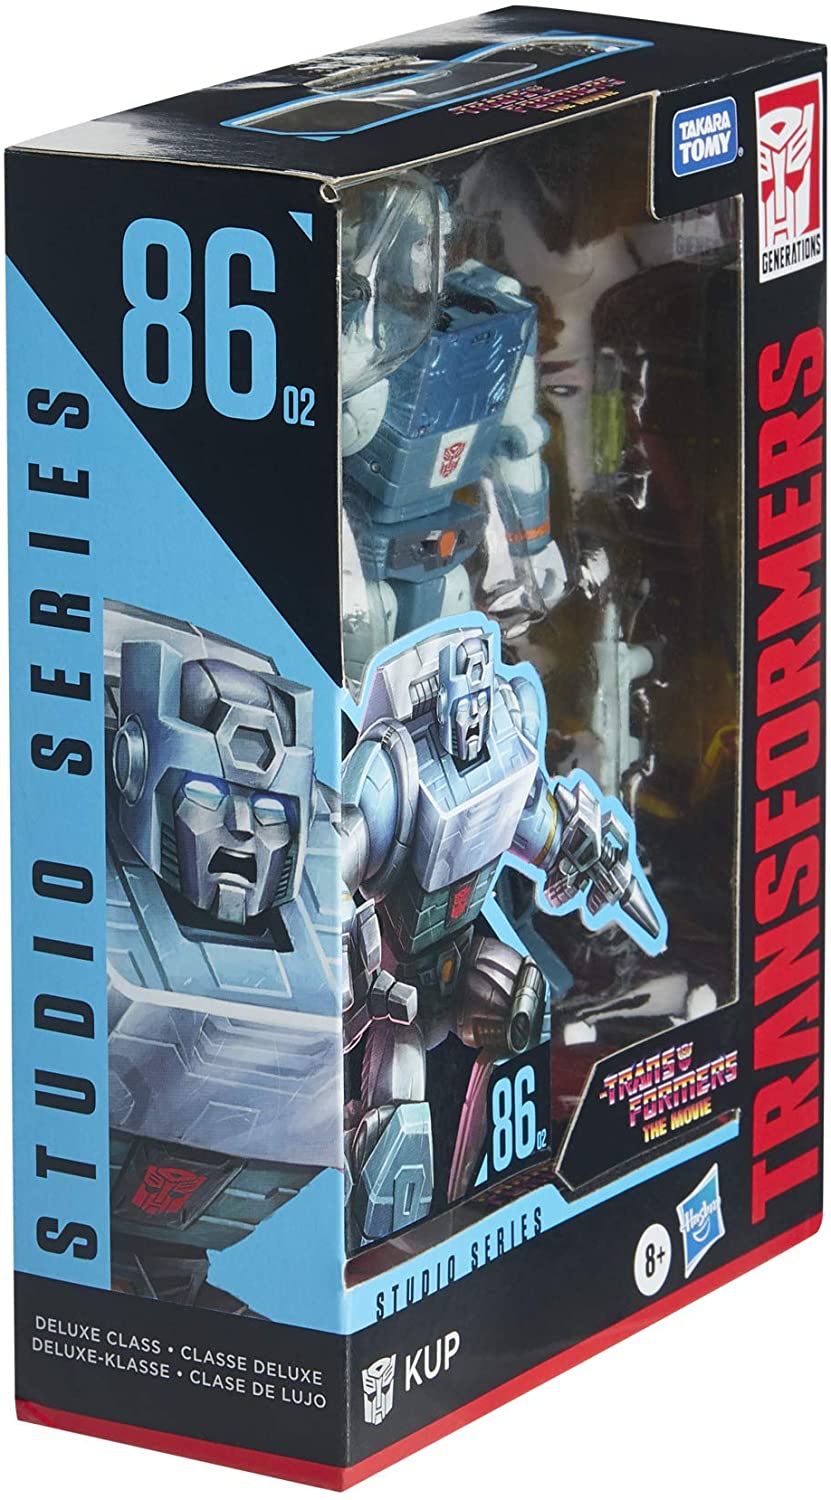 Hasbro Transformers Studio Series 86 Deluxe Kup